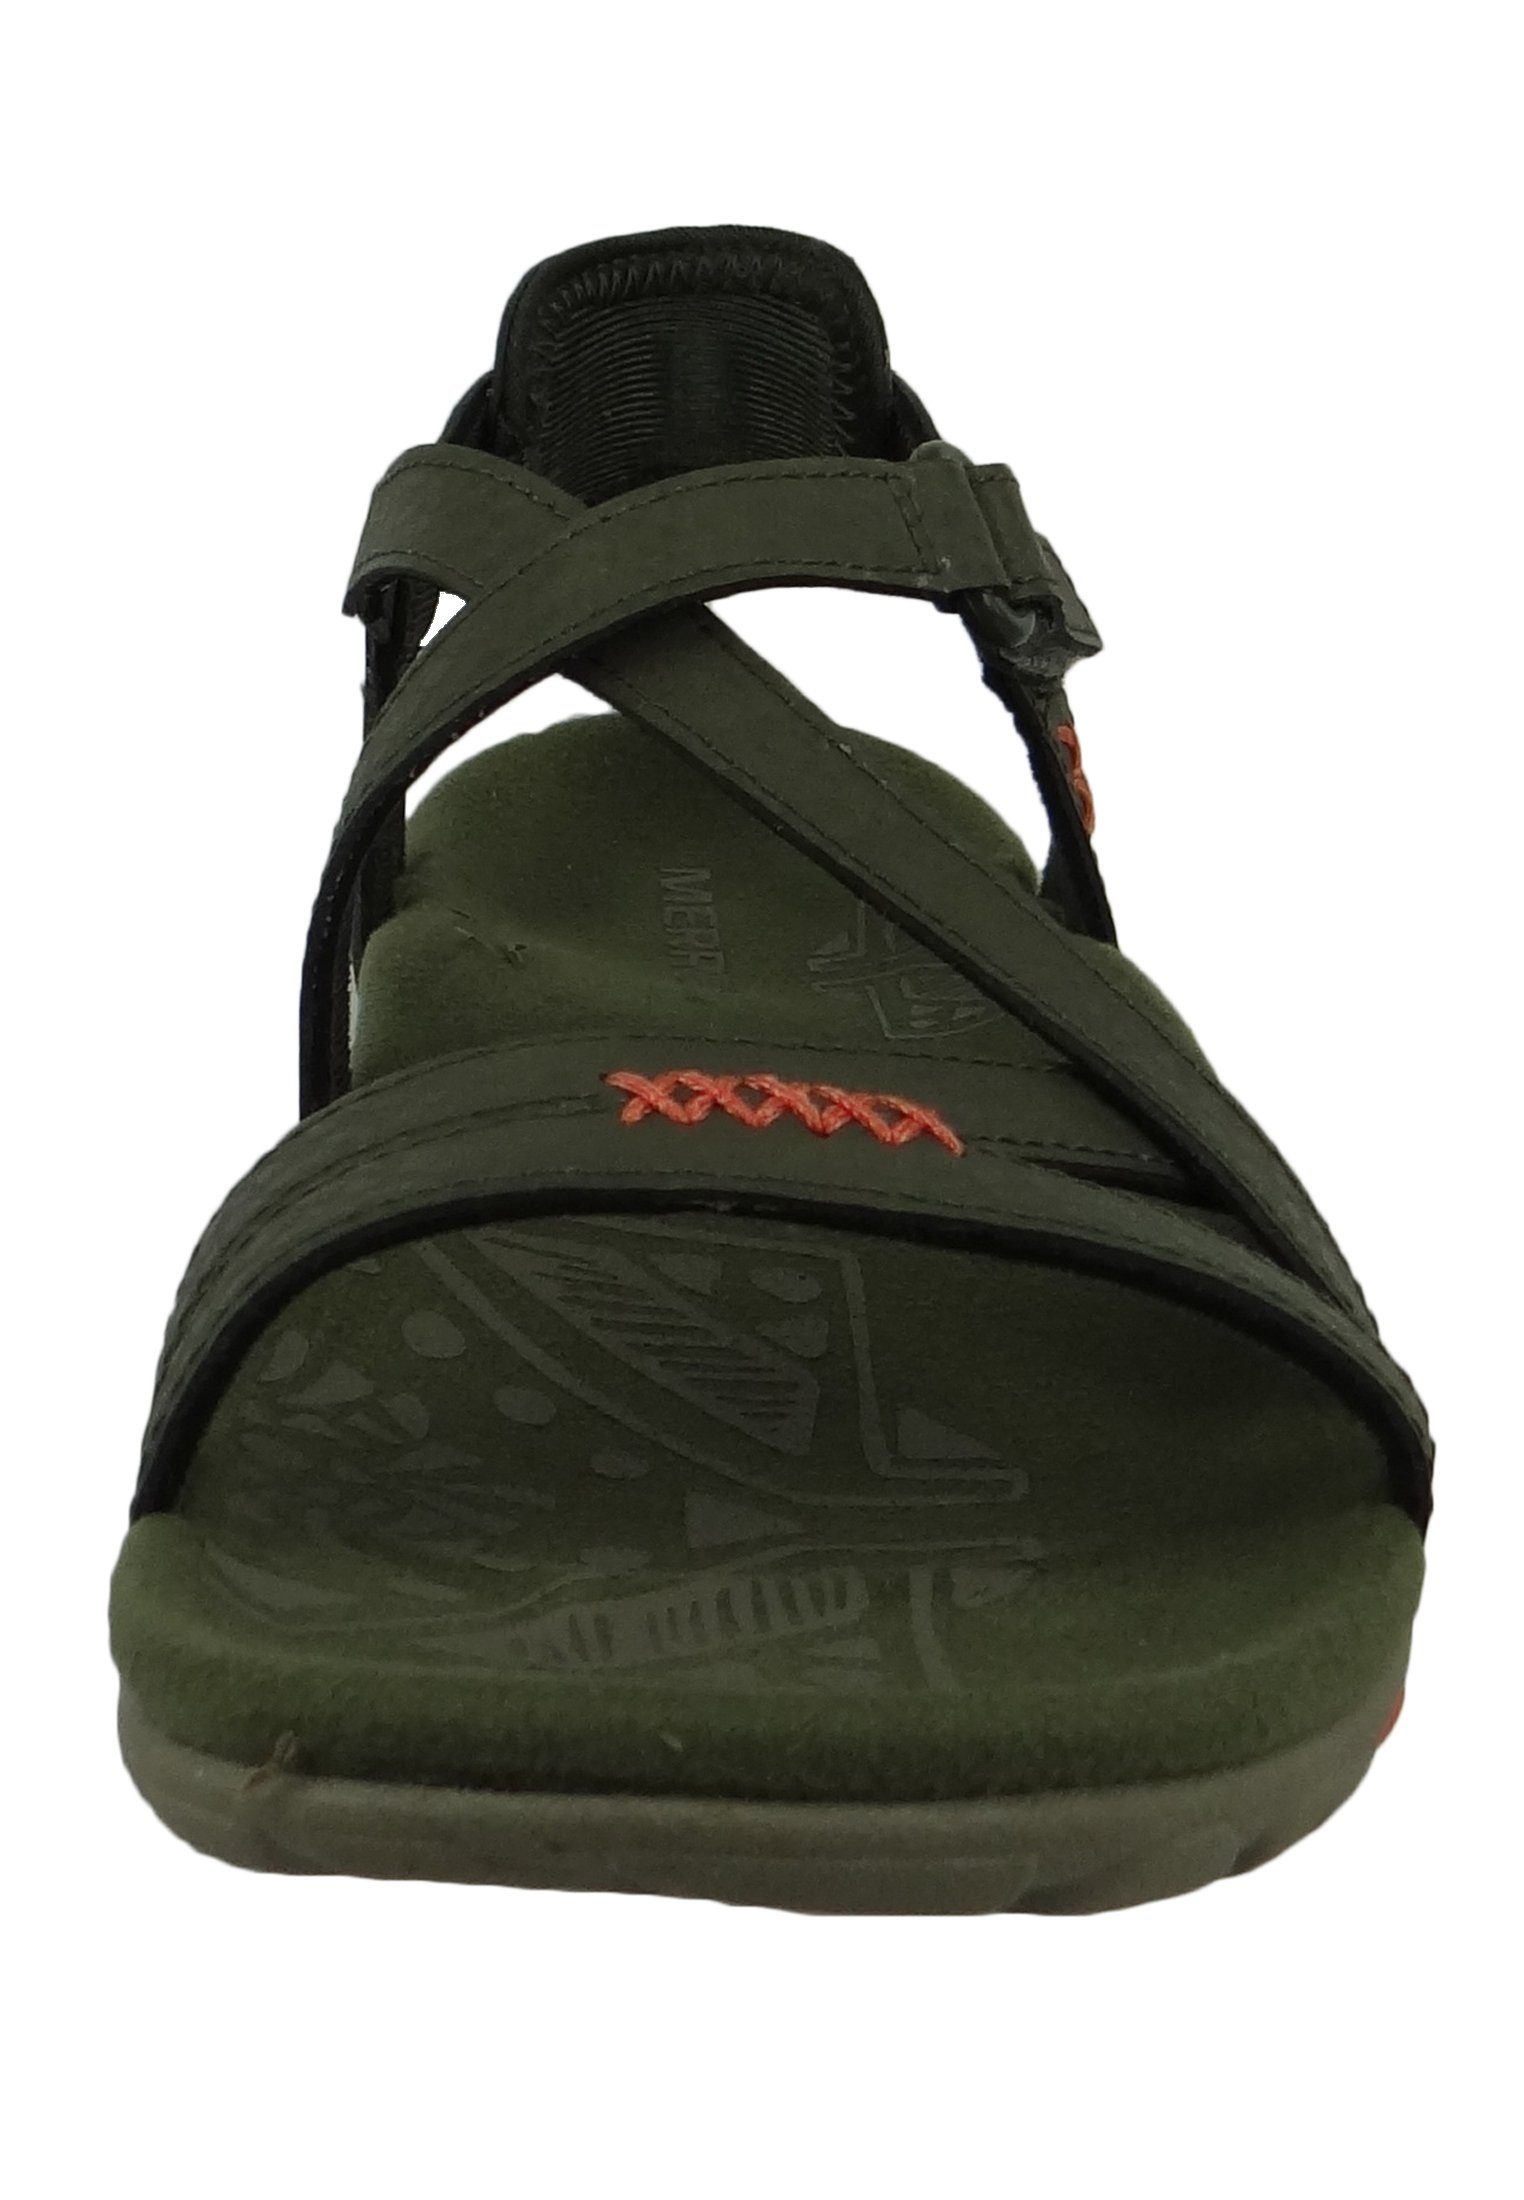 Schuhe Riemchensandalen Merrell J001226 Sandspur Olive Sandale